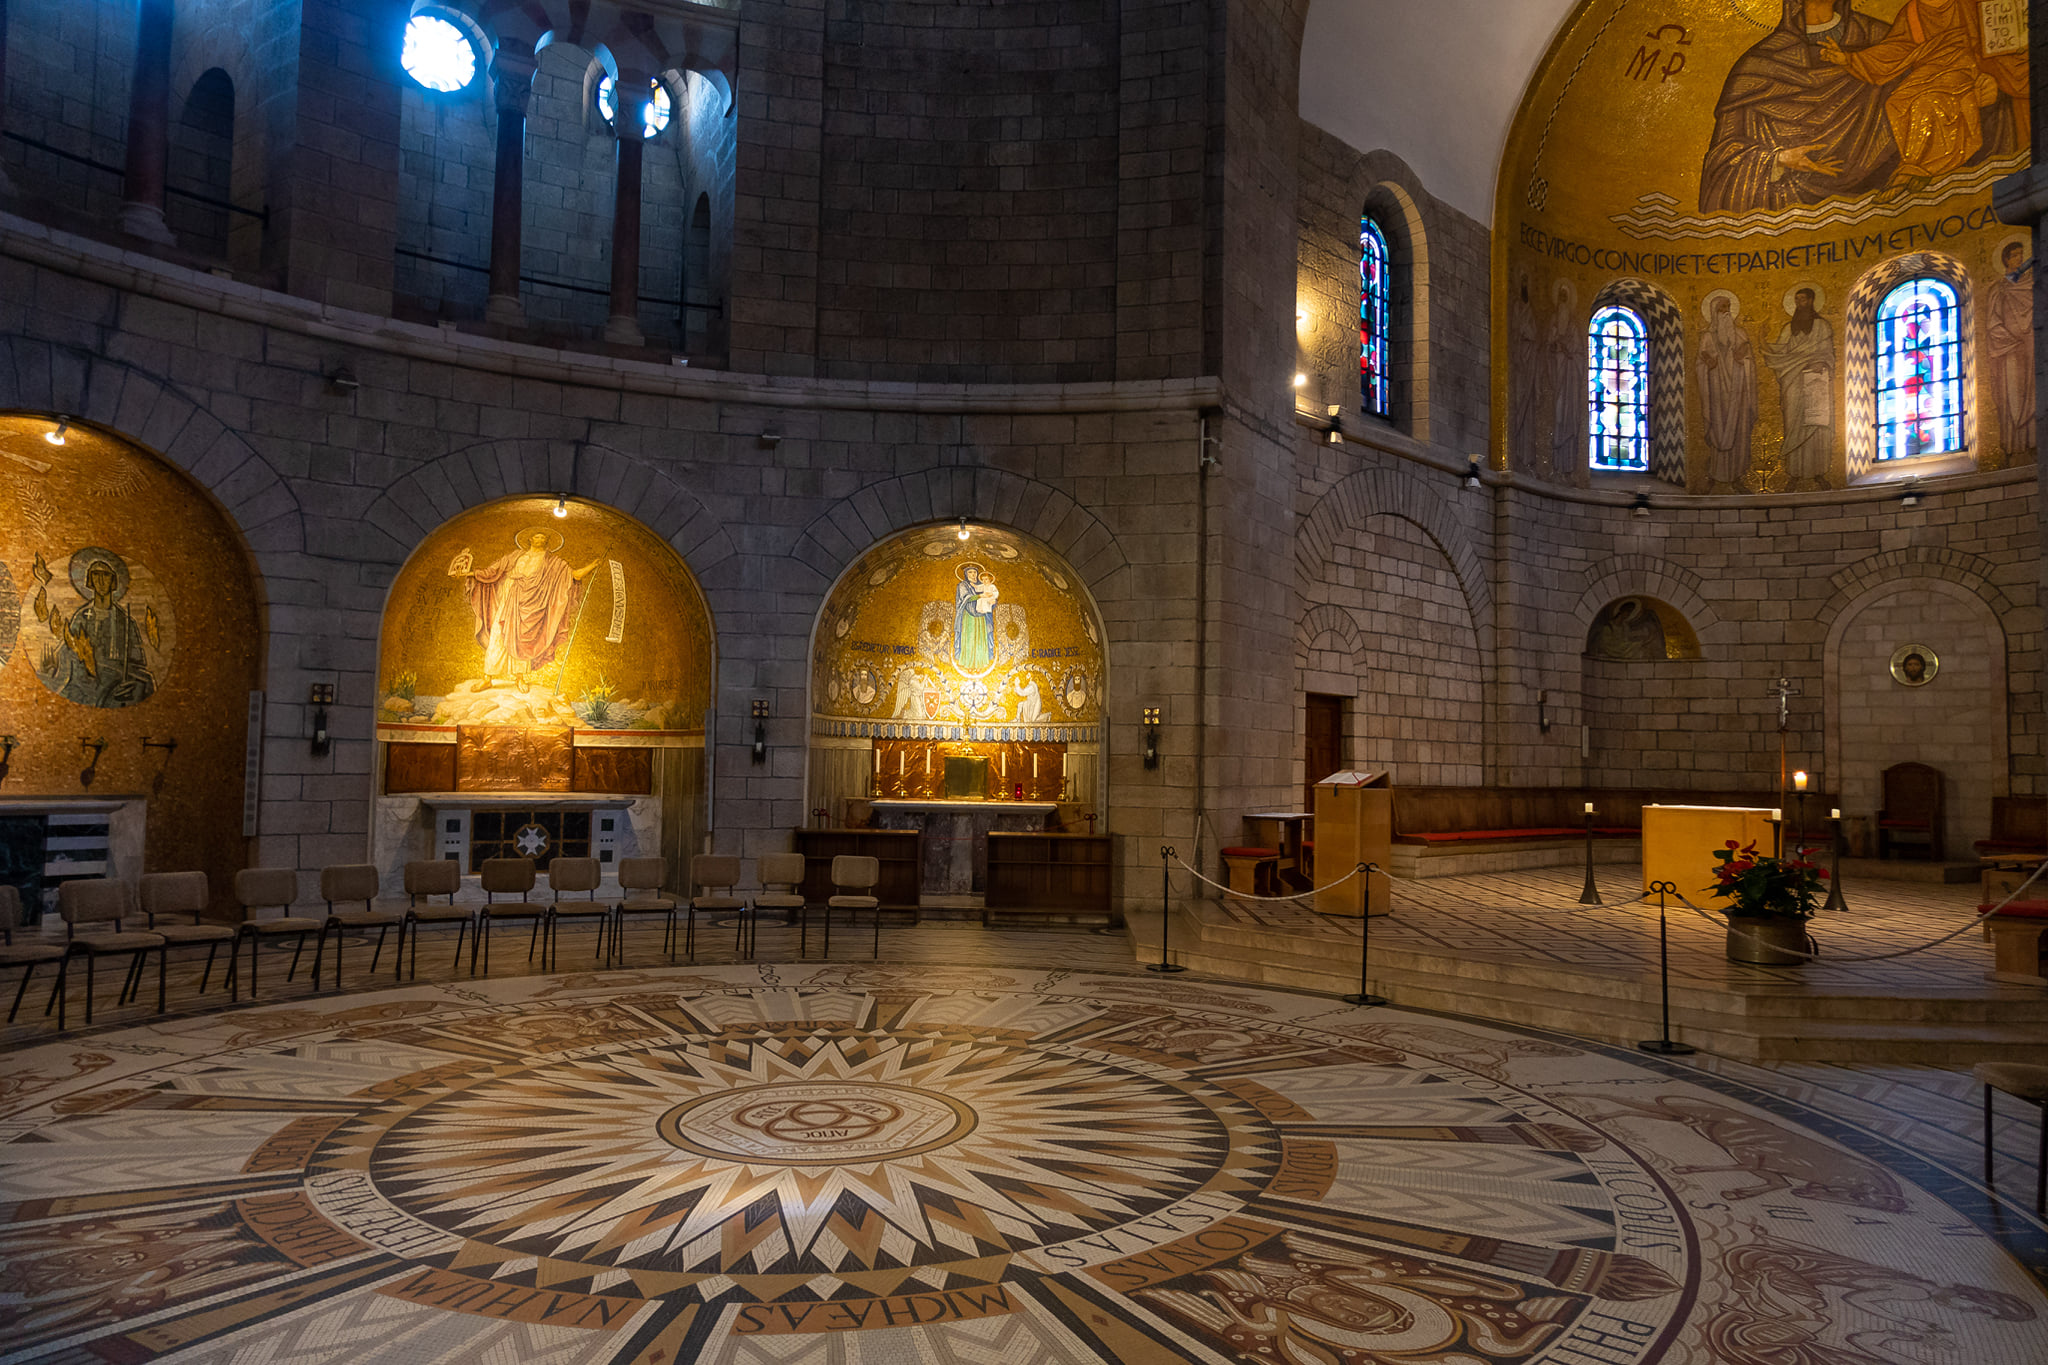 Inside the Dormition Abbey on Mount Zion, Jerusalem, Israel